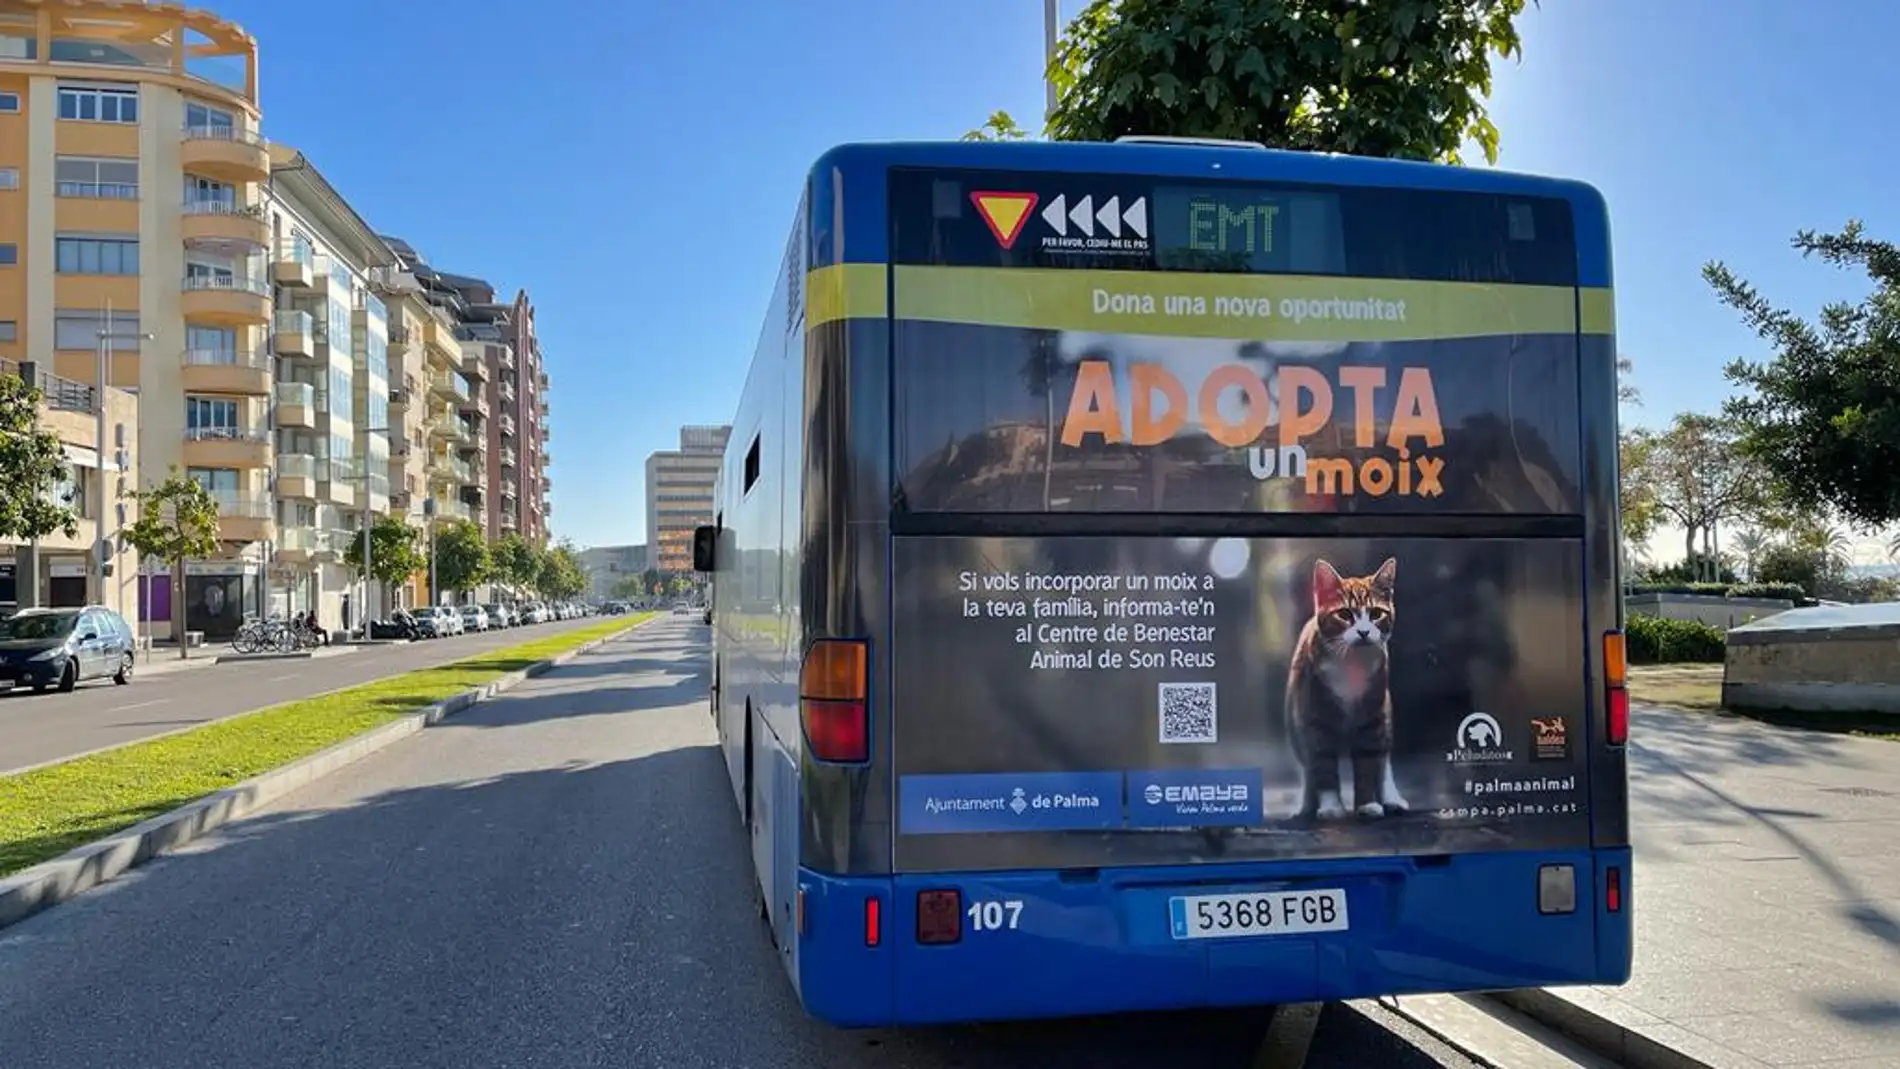 El Ajuntament de Palma promueve la campaña "Adopta un moix" para promover la adopción de gatos en el centro de Son Reus